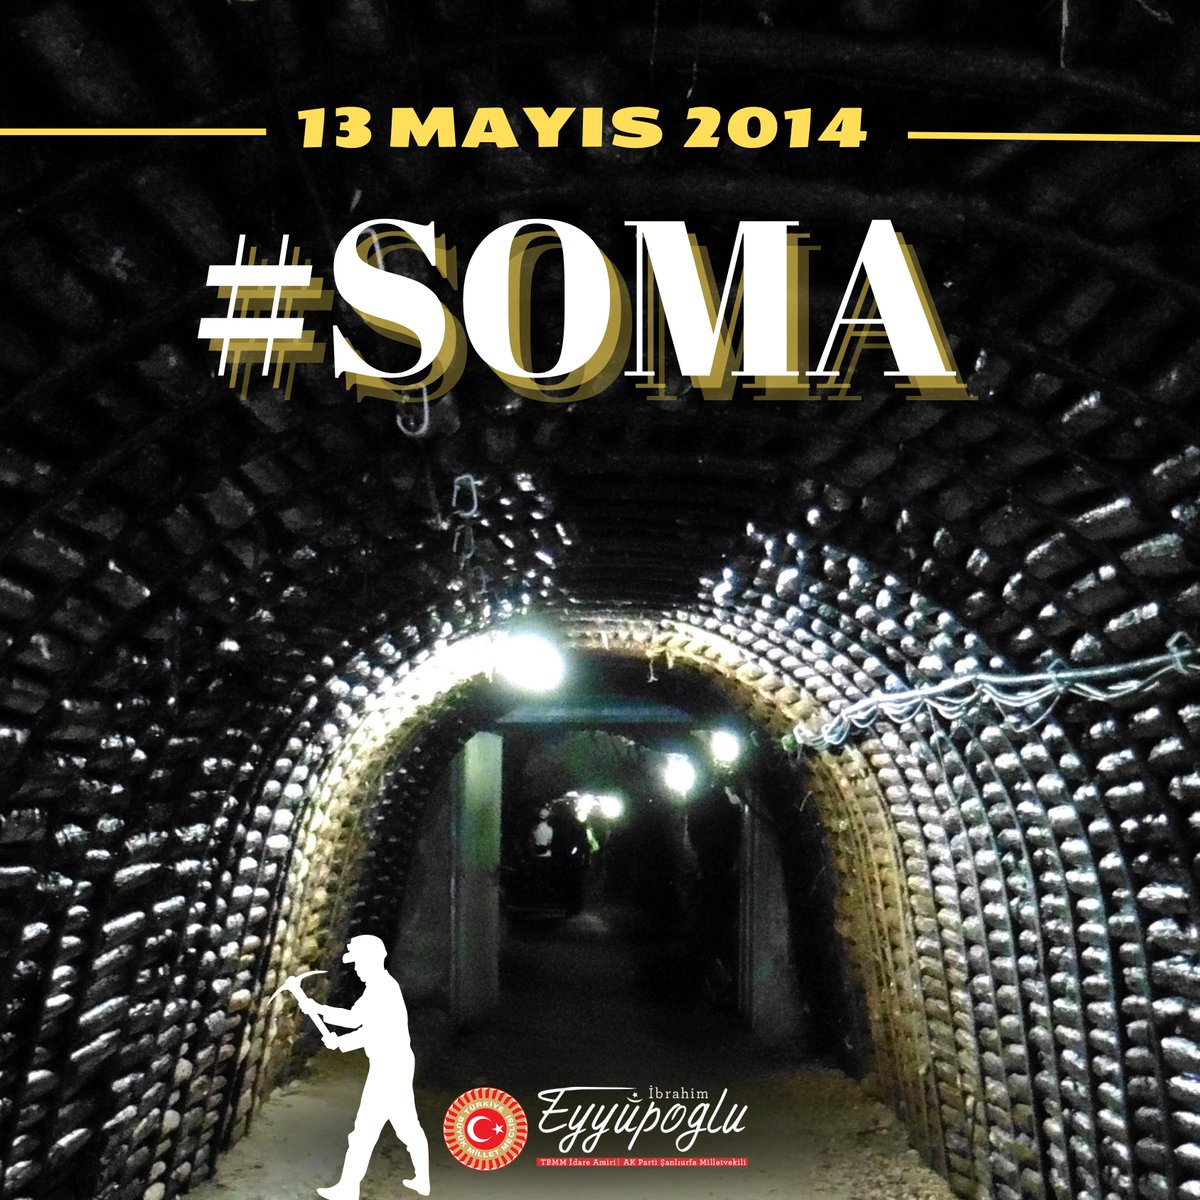 Soma faciasının 10. yılında yaşamını yitiren tüm kardeşlerimizi saygı ve rahmetle anıyorum... #Soma @RTErdogan